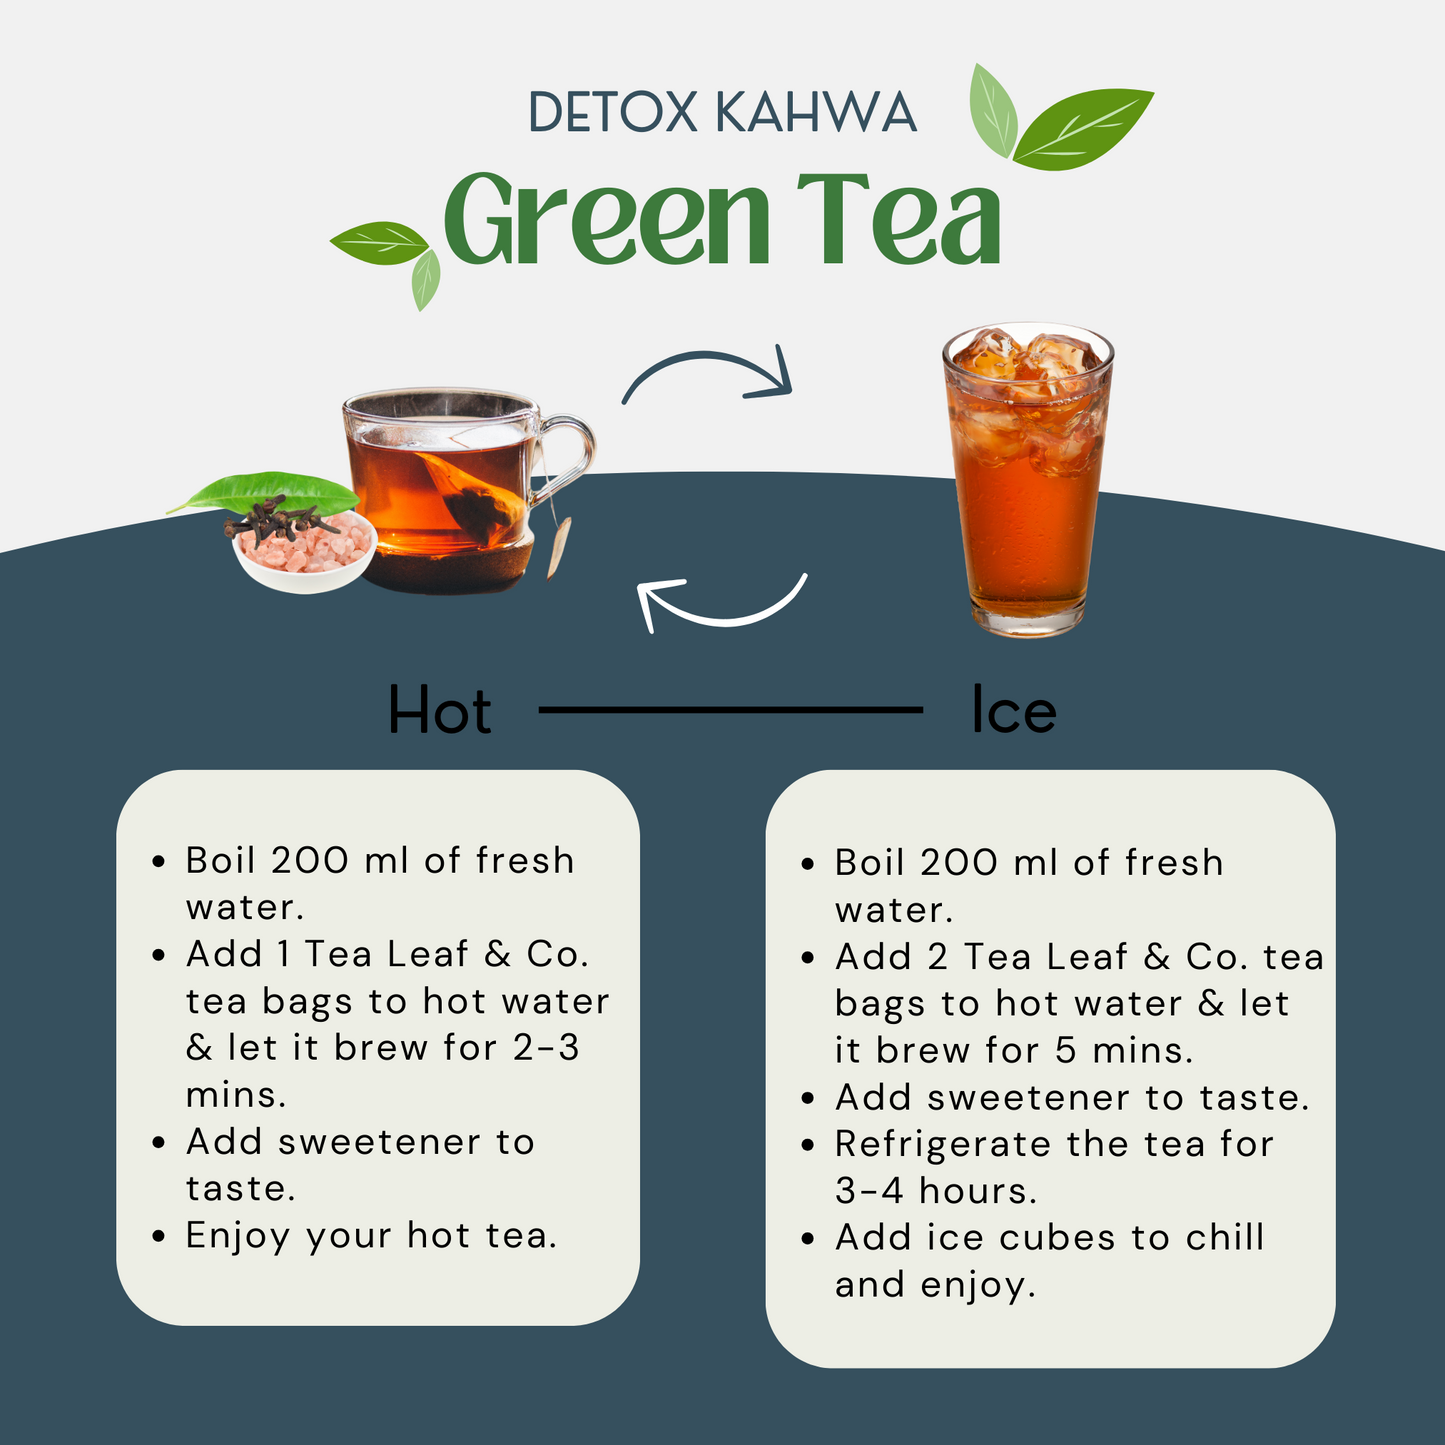 Detox Kahwa Green Tea - 25 Green Tea Bags